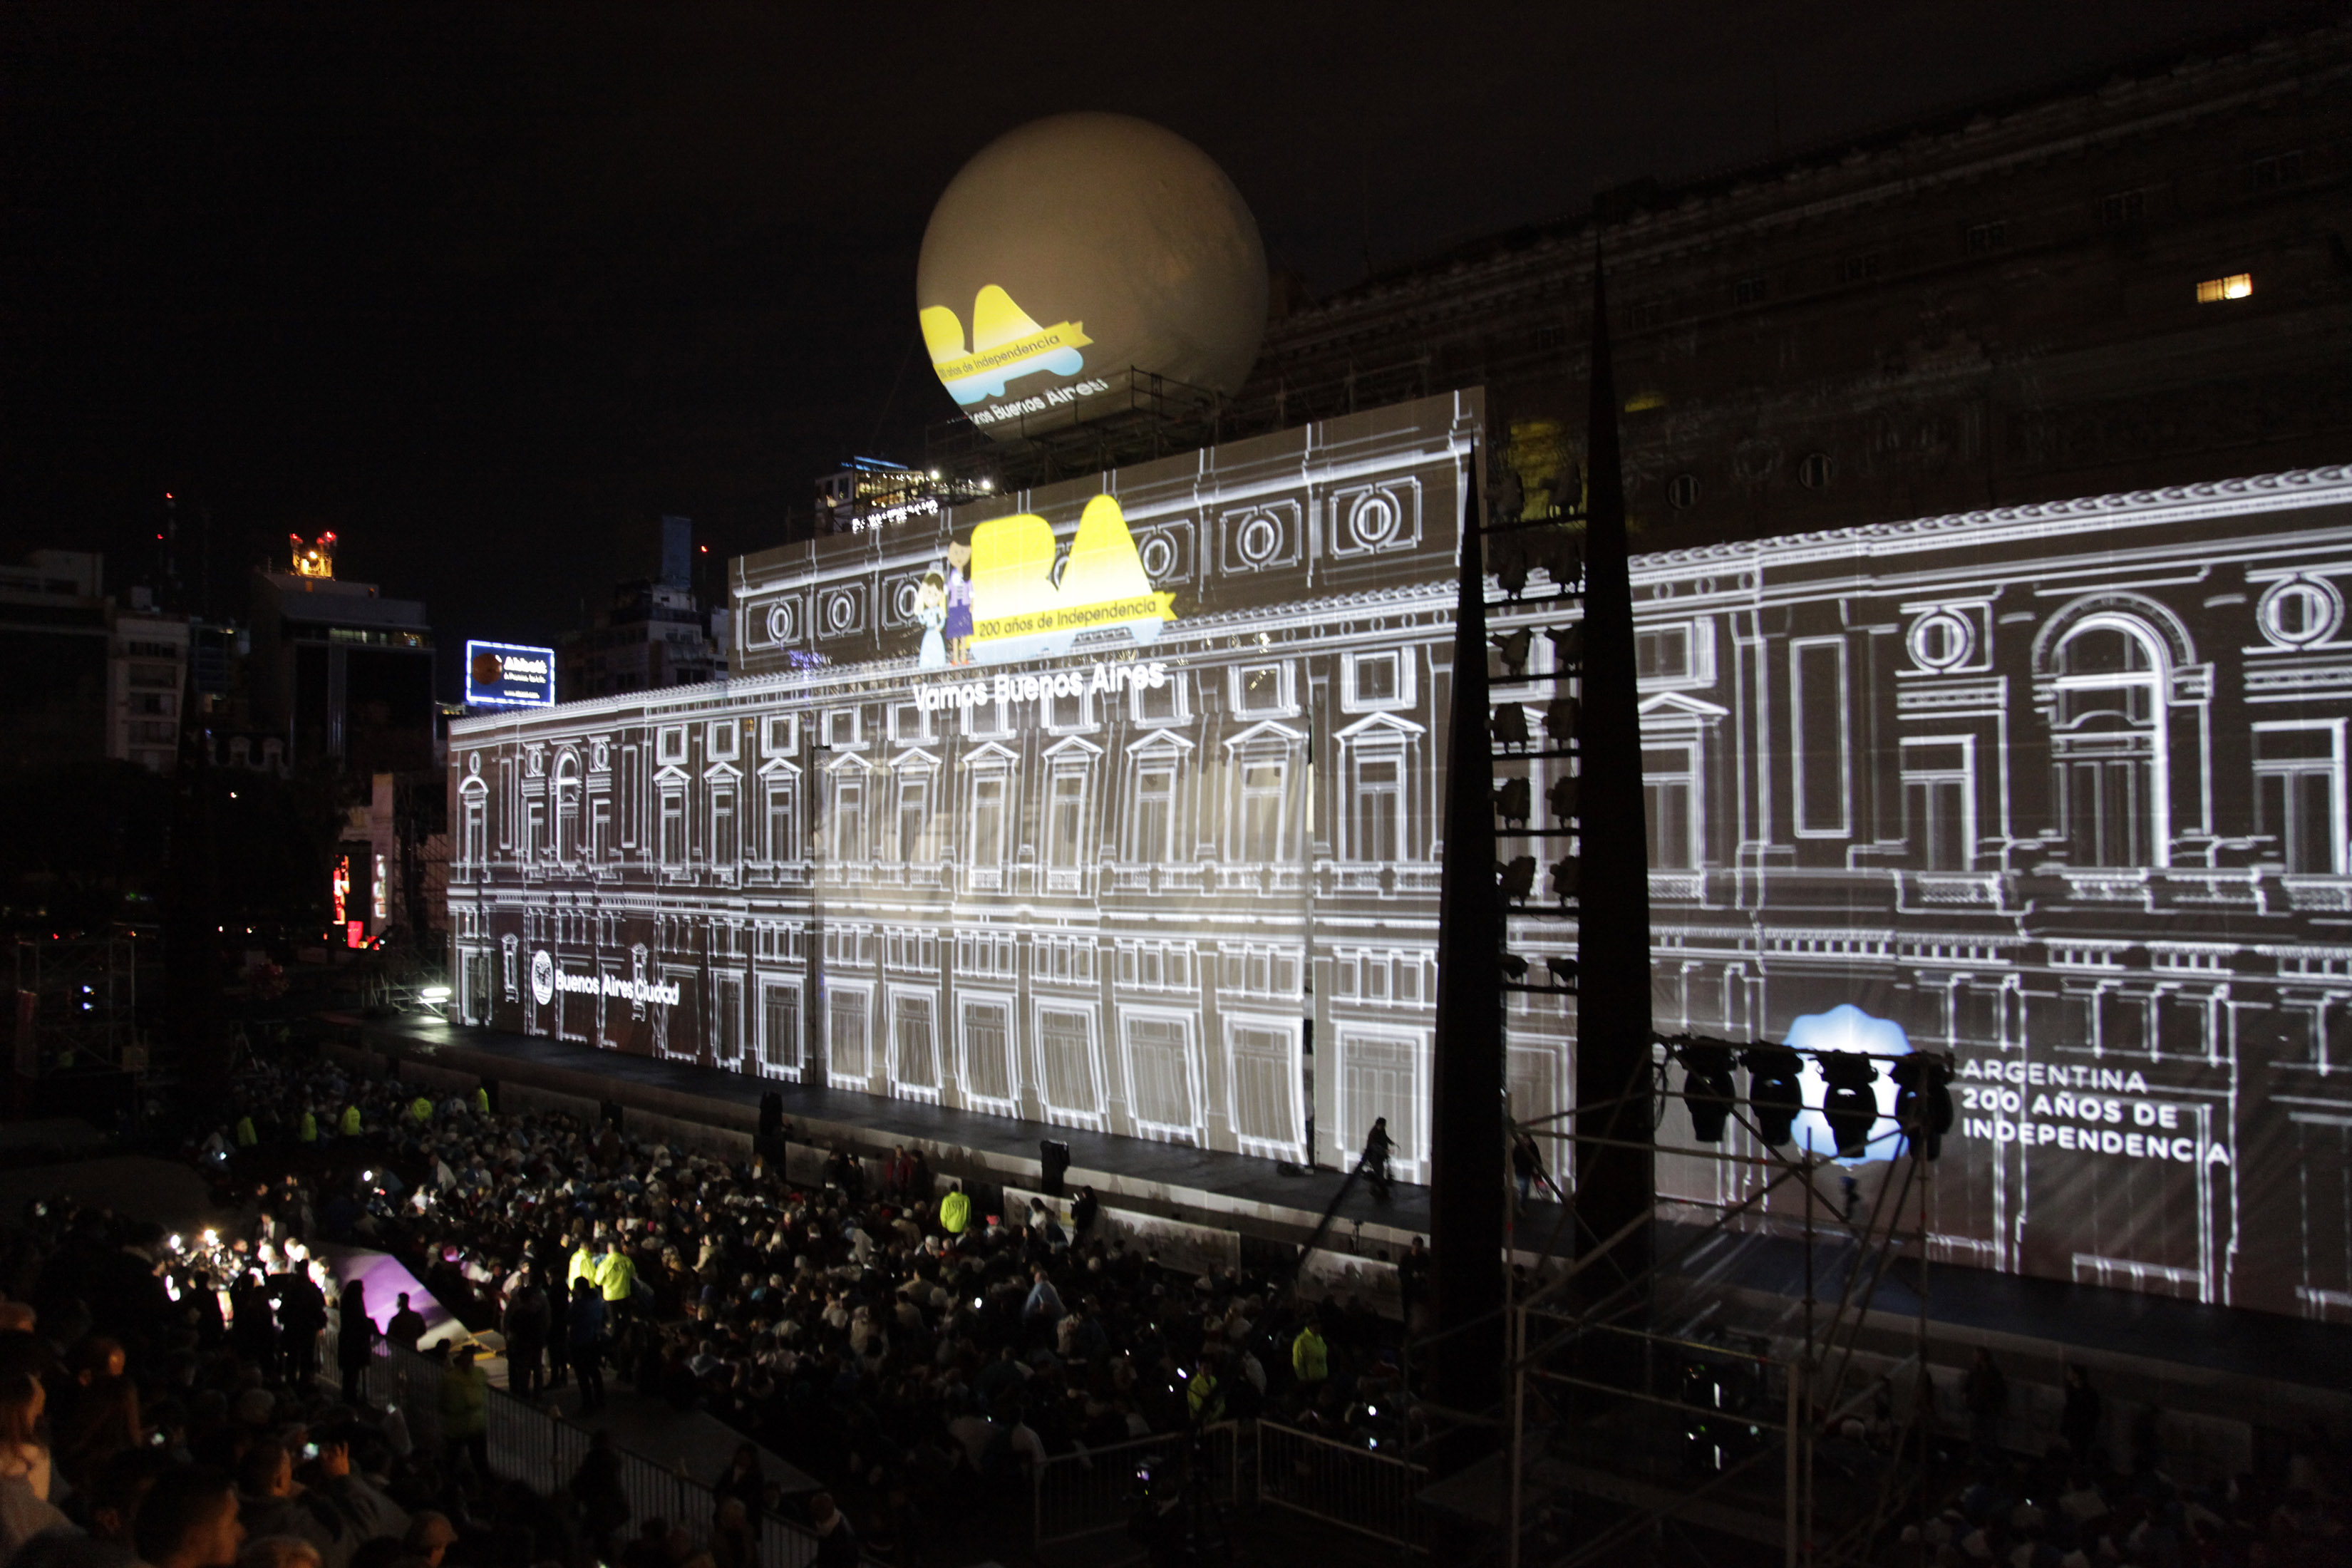 La celebración del bicentenario argentino: la noche de los 200 años